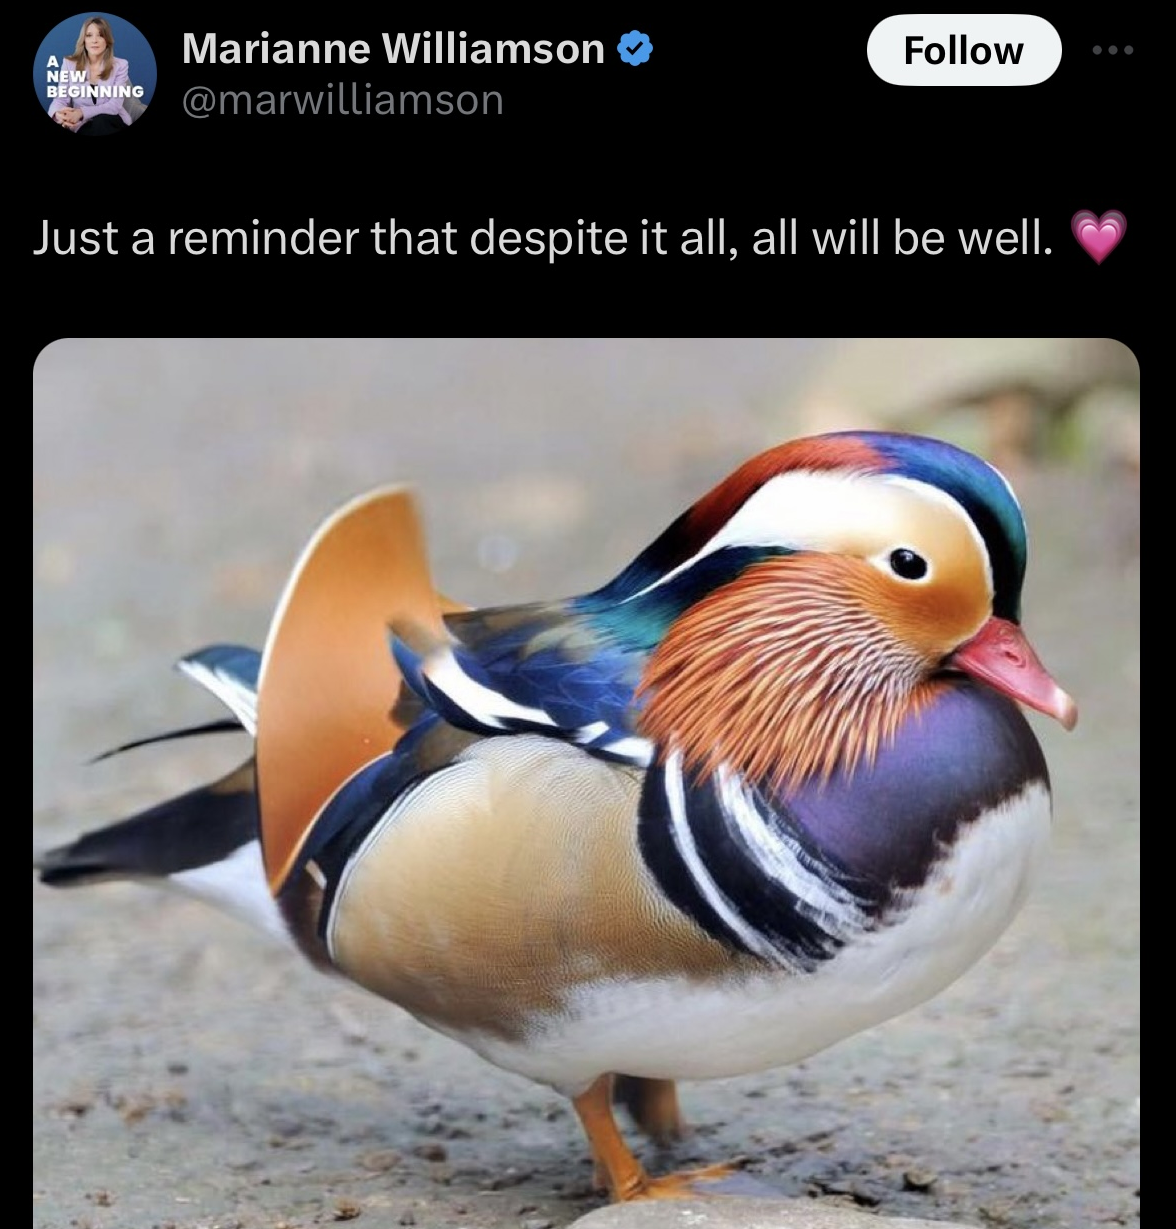 Marianne Williamson demokrata elnökjelölt nagyon furcsán rajong a madarakért